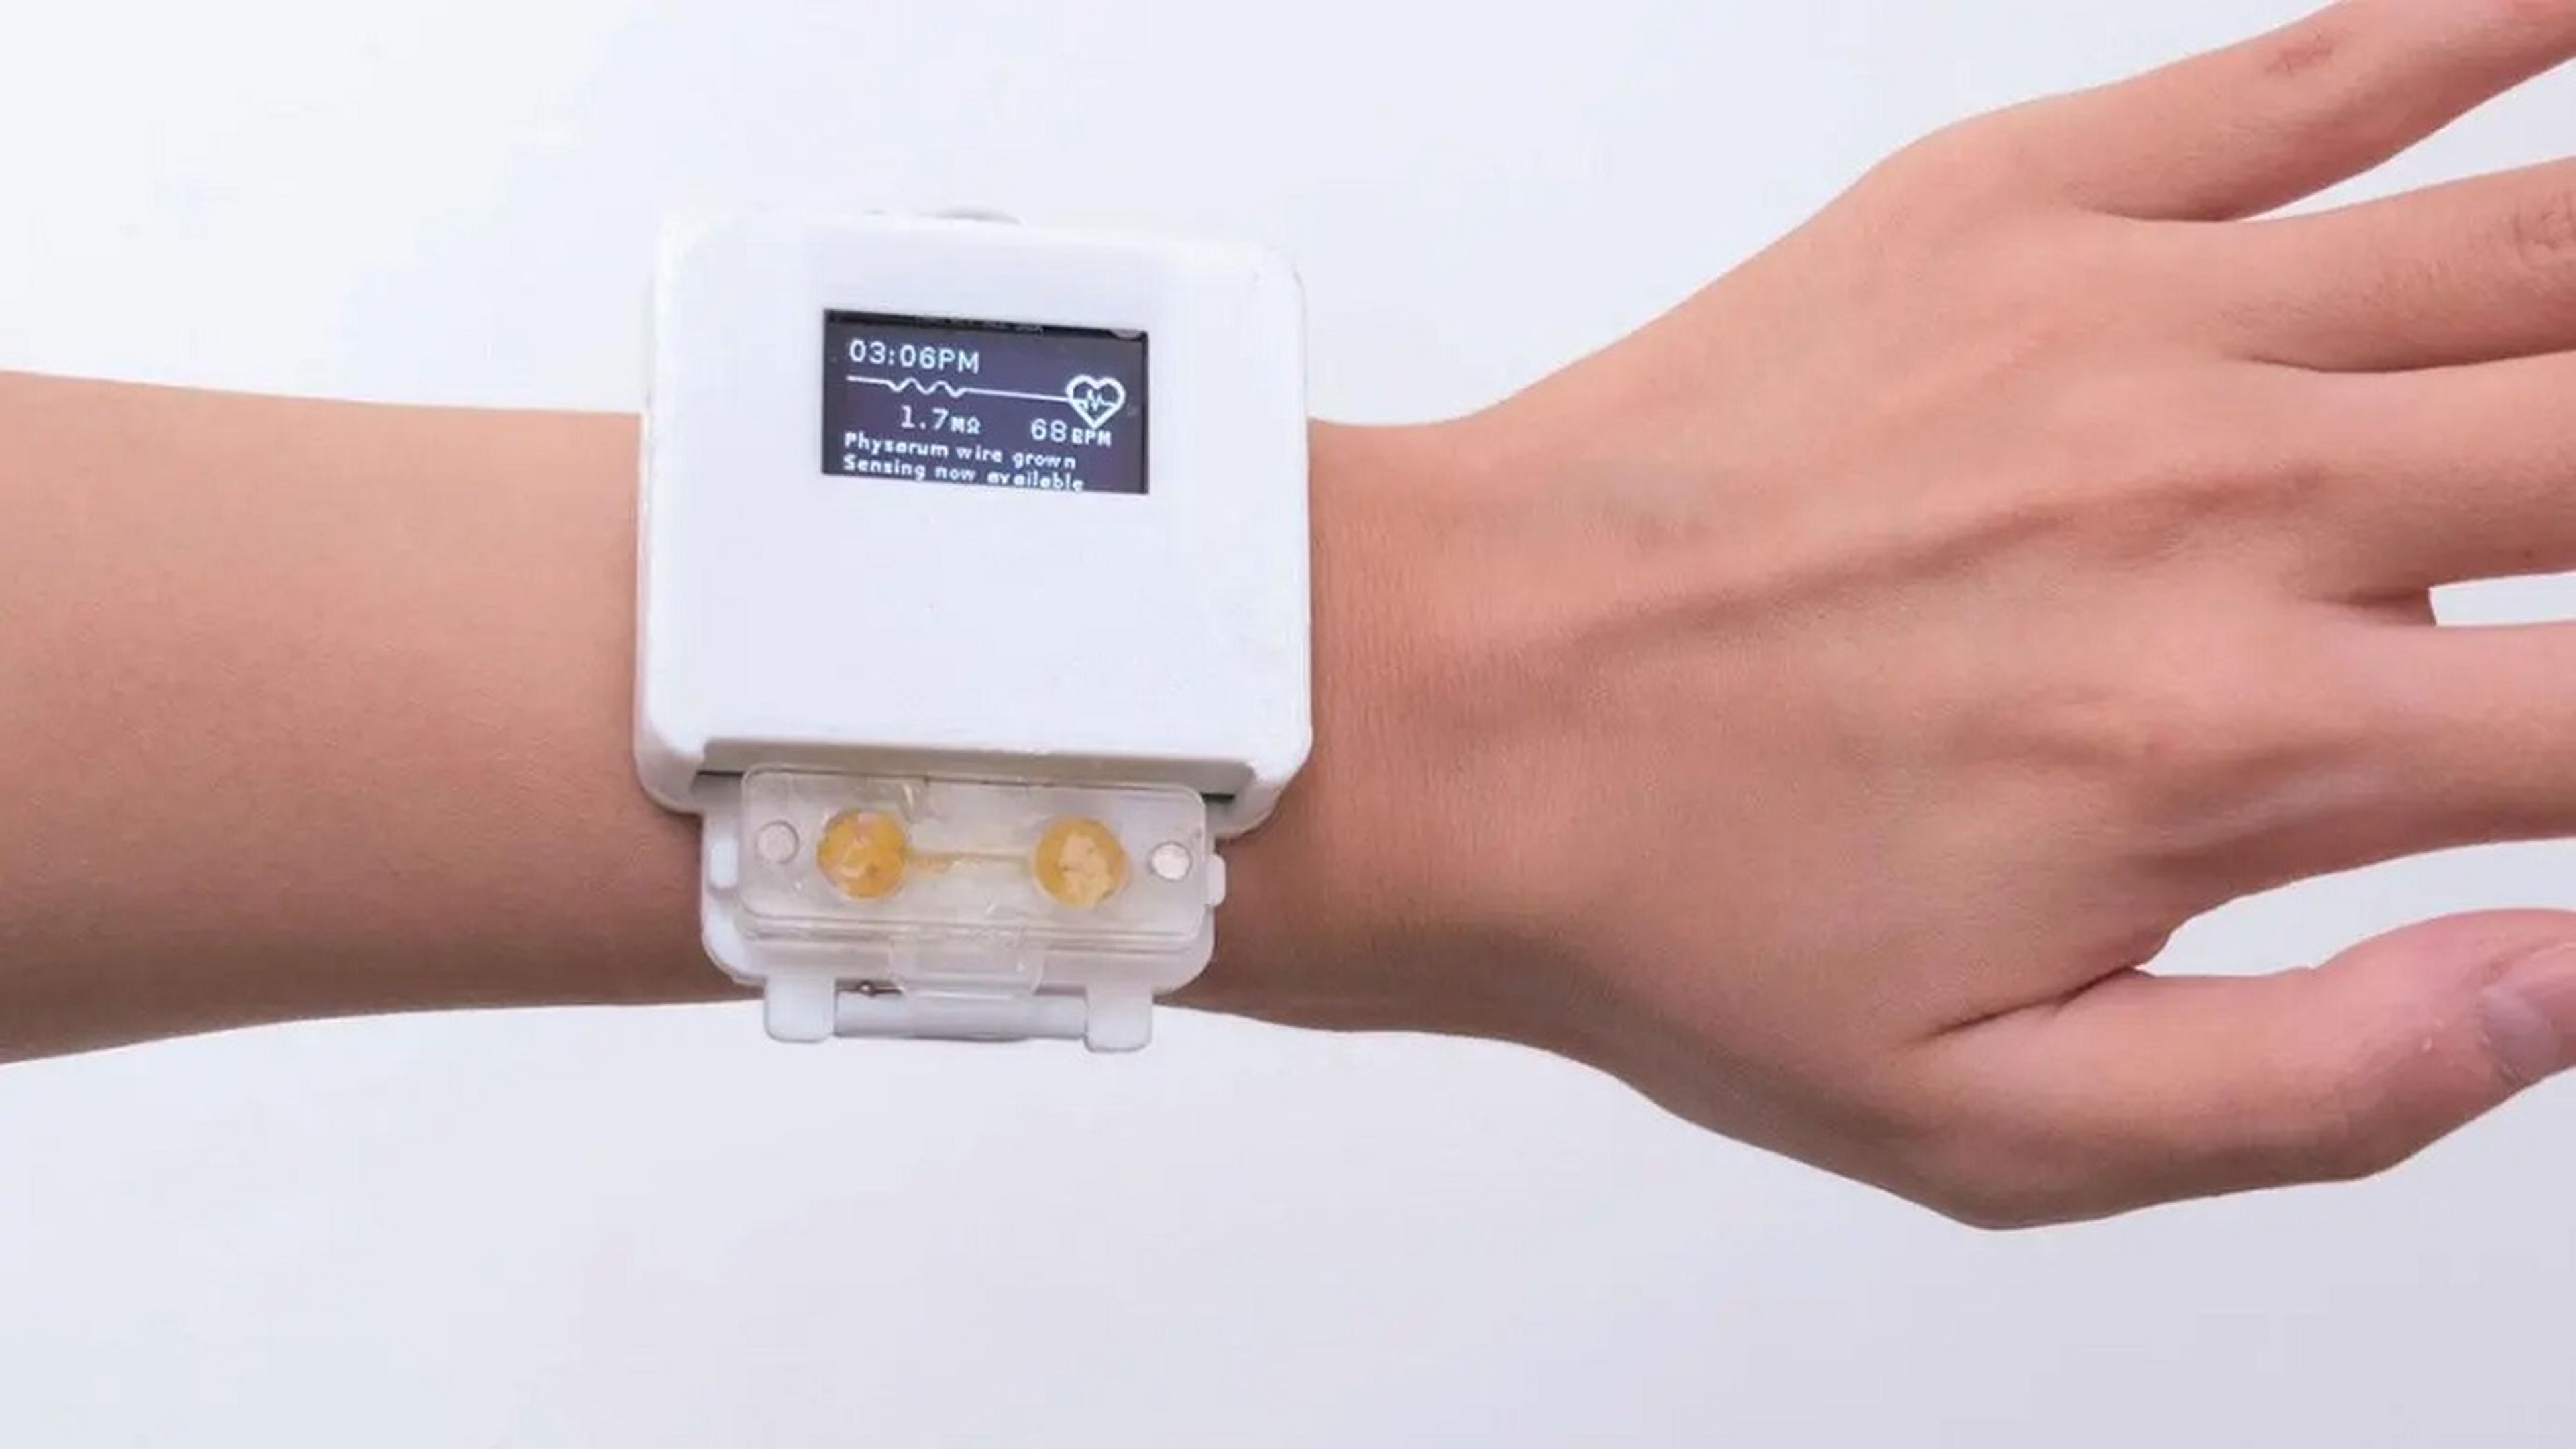 El smartwatch sin batería que funciona con organismos vivos que tienes que regar y alimentar